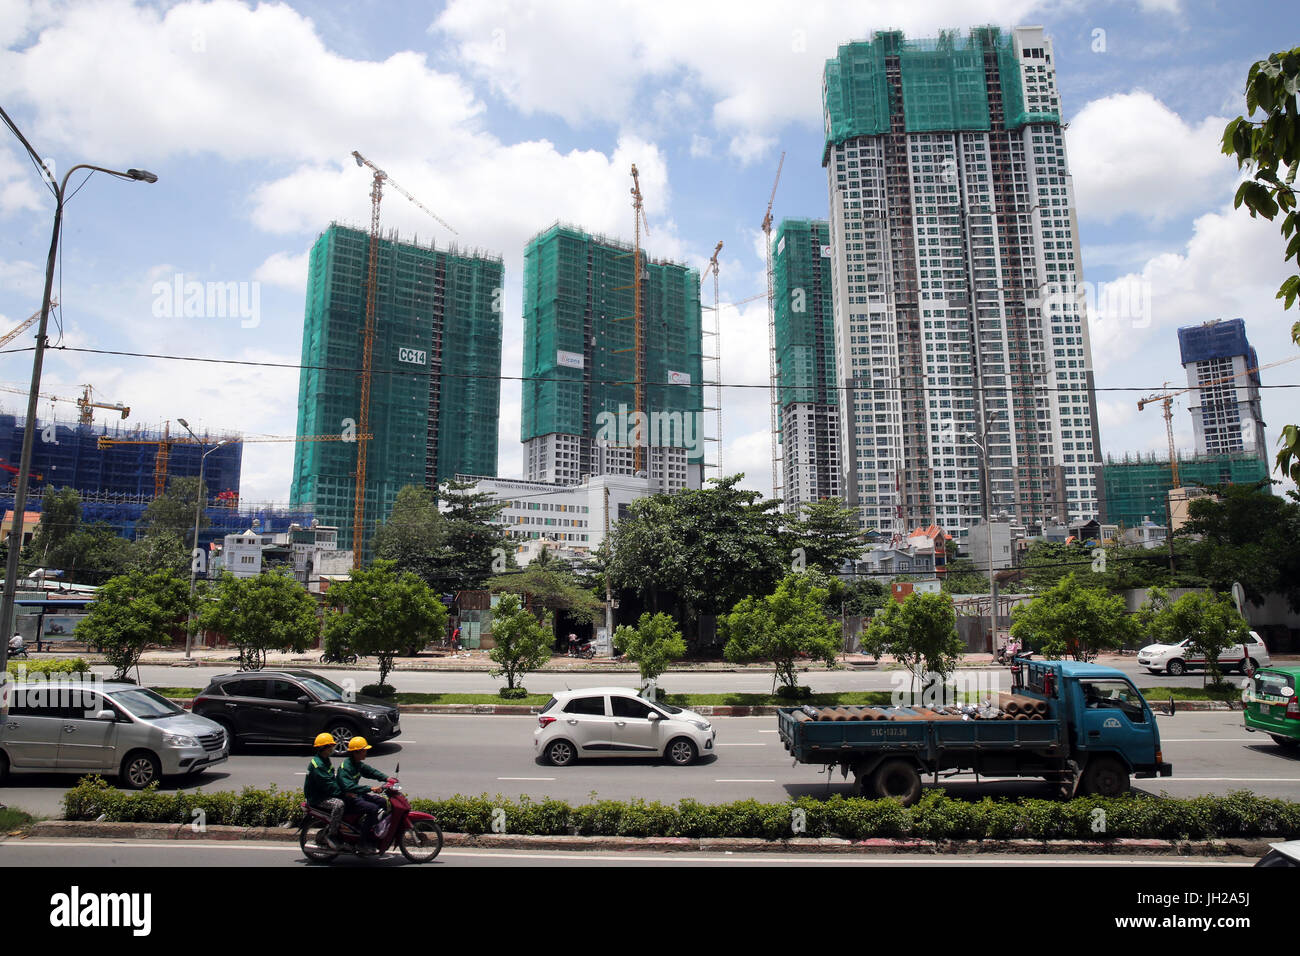 Le site de construction à Saigon au sud, un développement urbain résidentiel et commercial couvrant 3 300 hectares. Ho Chi Minh Ville. Le Vietnam. Banque D'Images